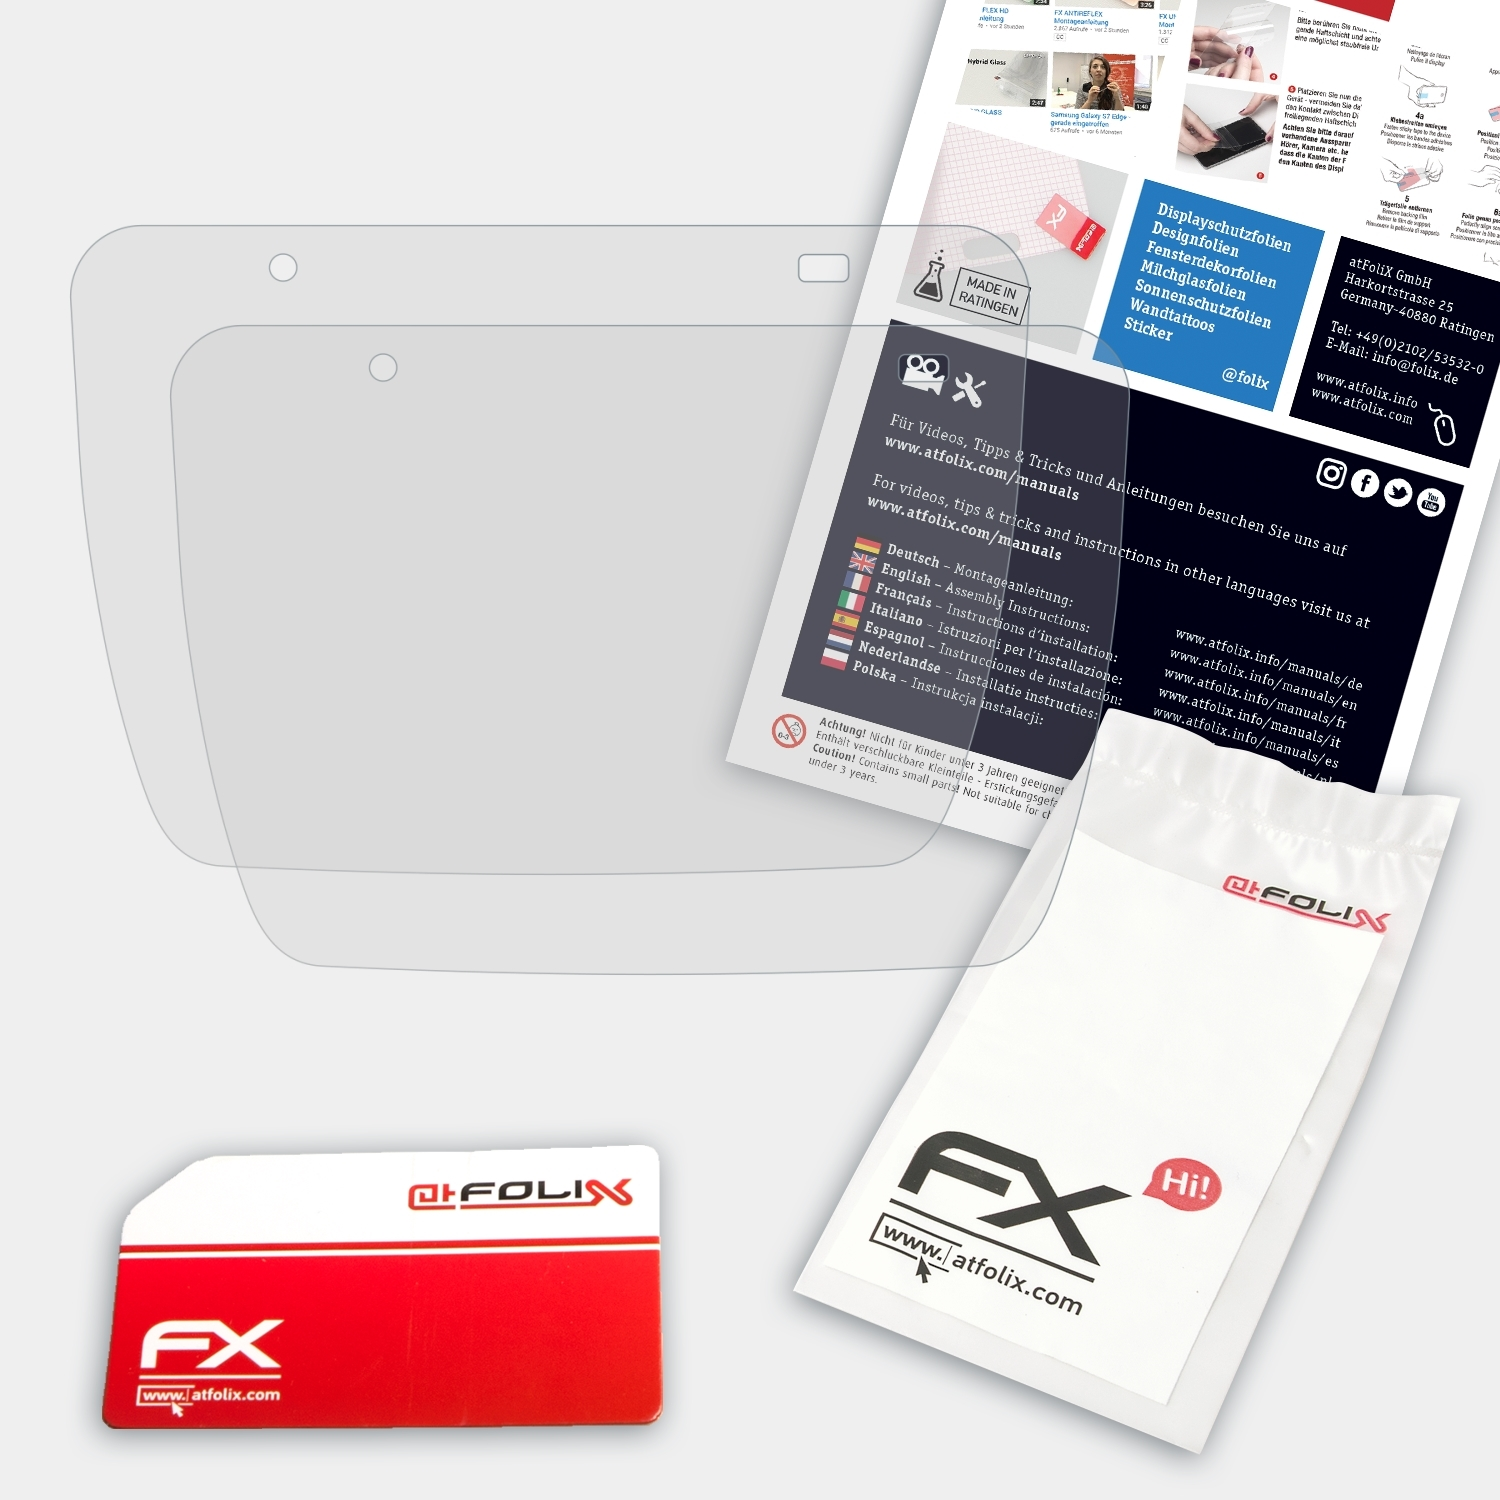 ATFOLIX 2x FX-Antireflex Laufband F75) Displayschutz(für Sportstech